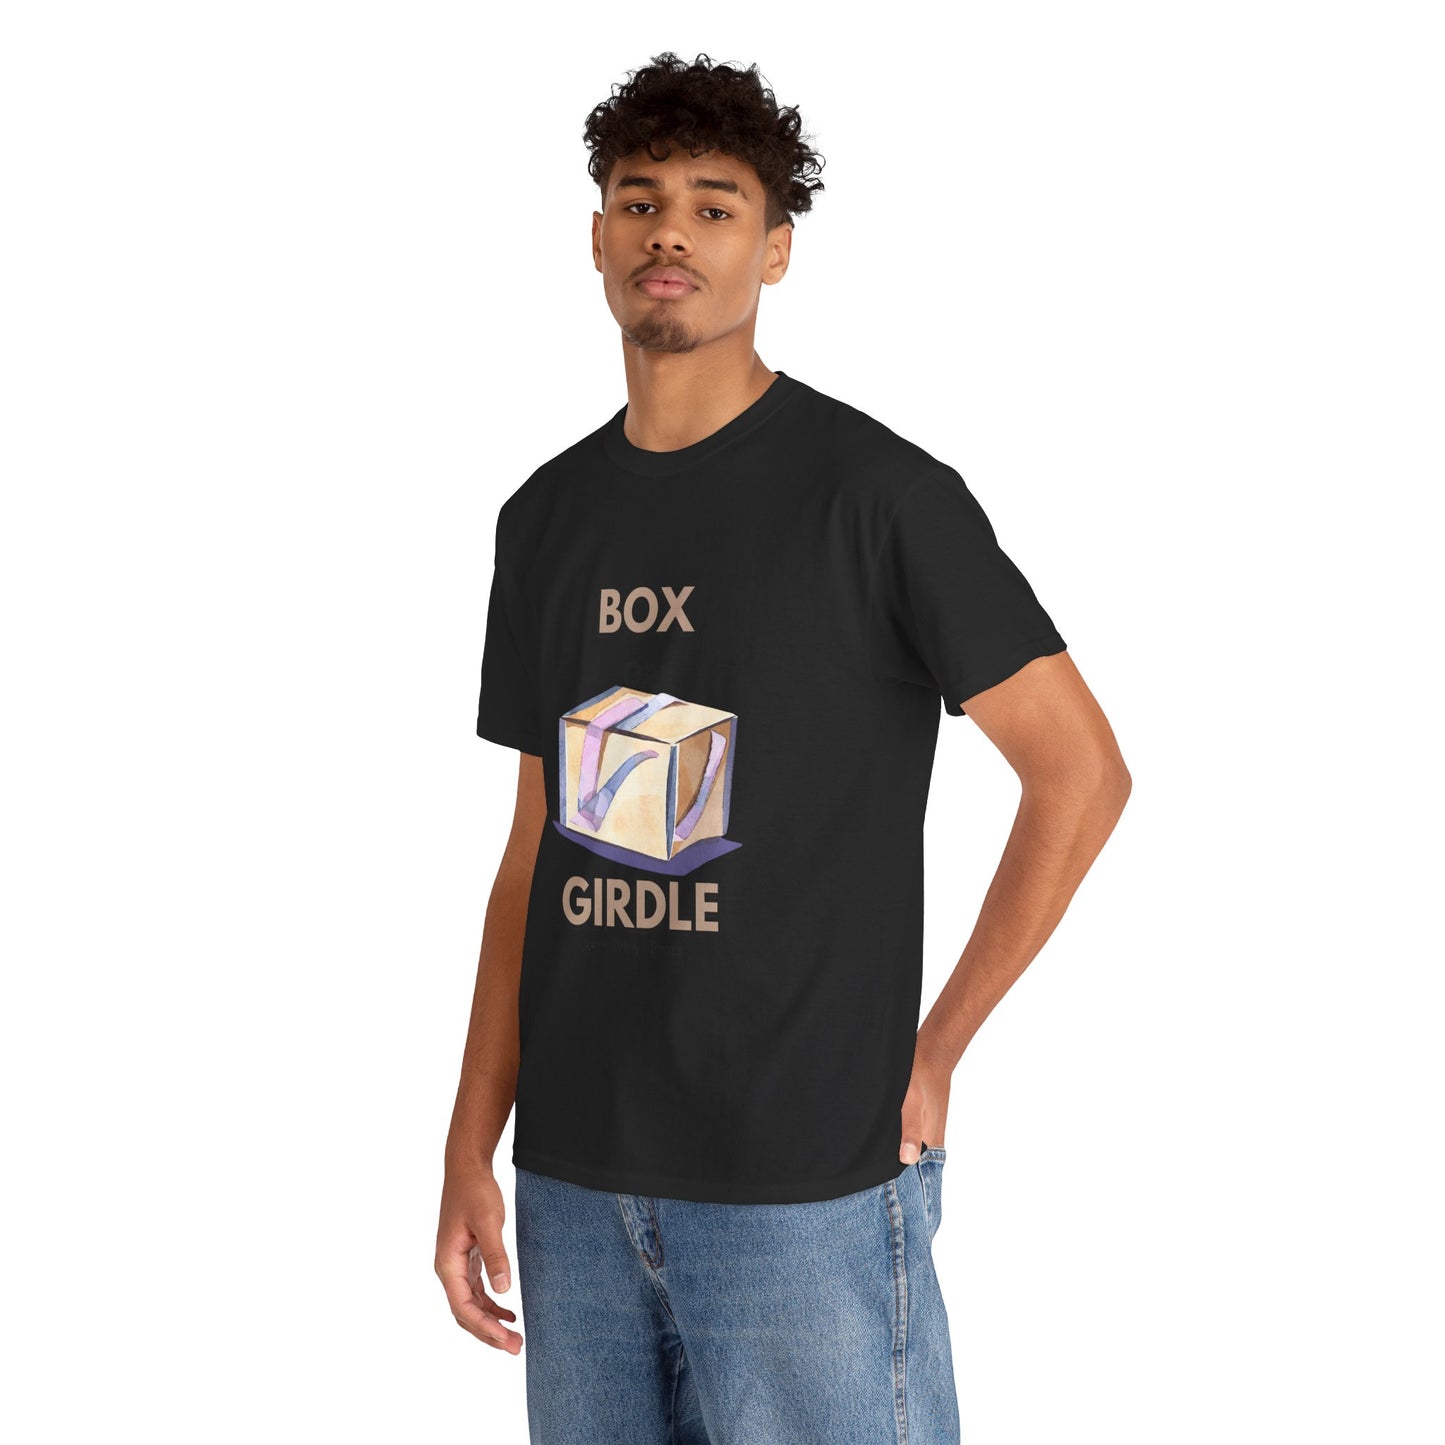 Box or girdle T-shirt Joan Prim i Prat